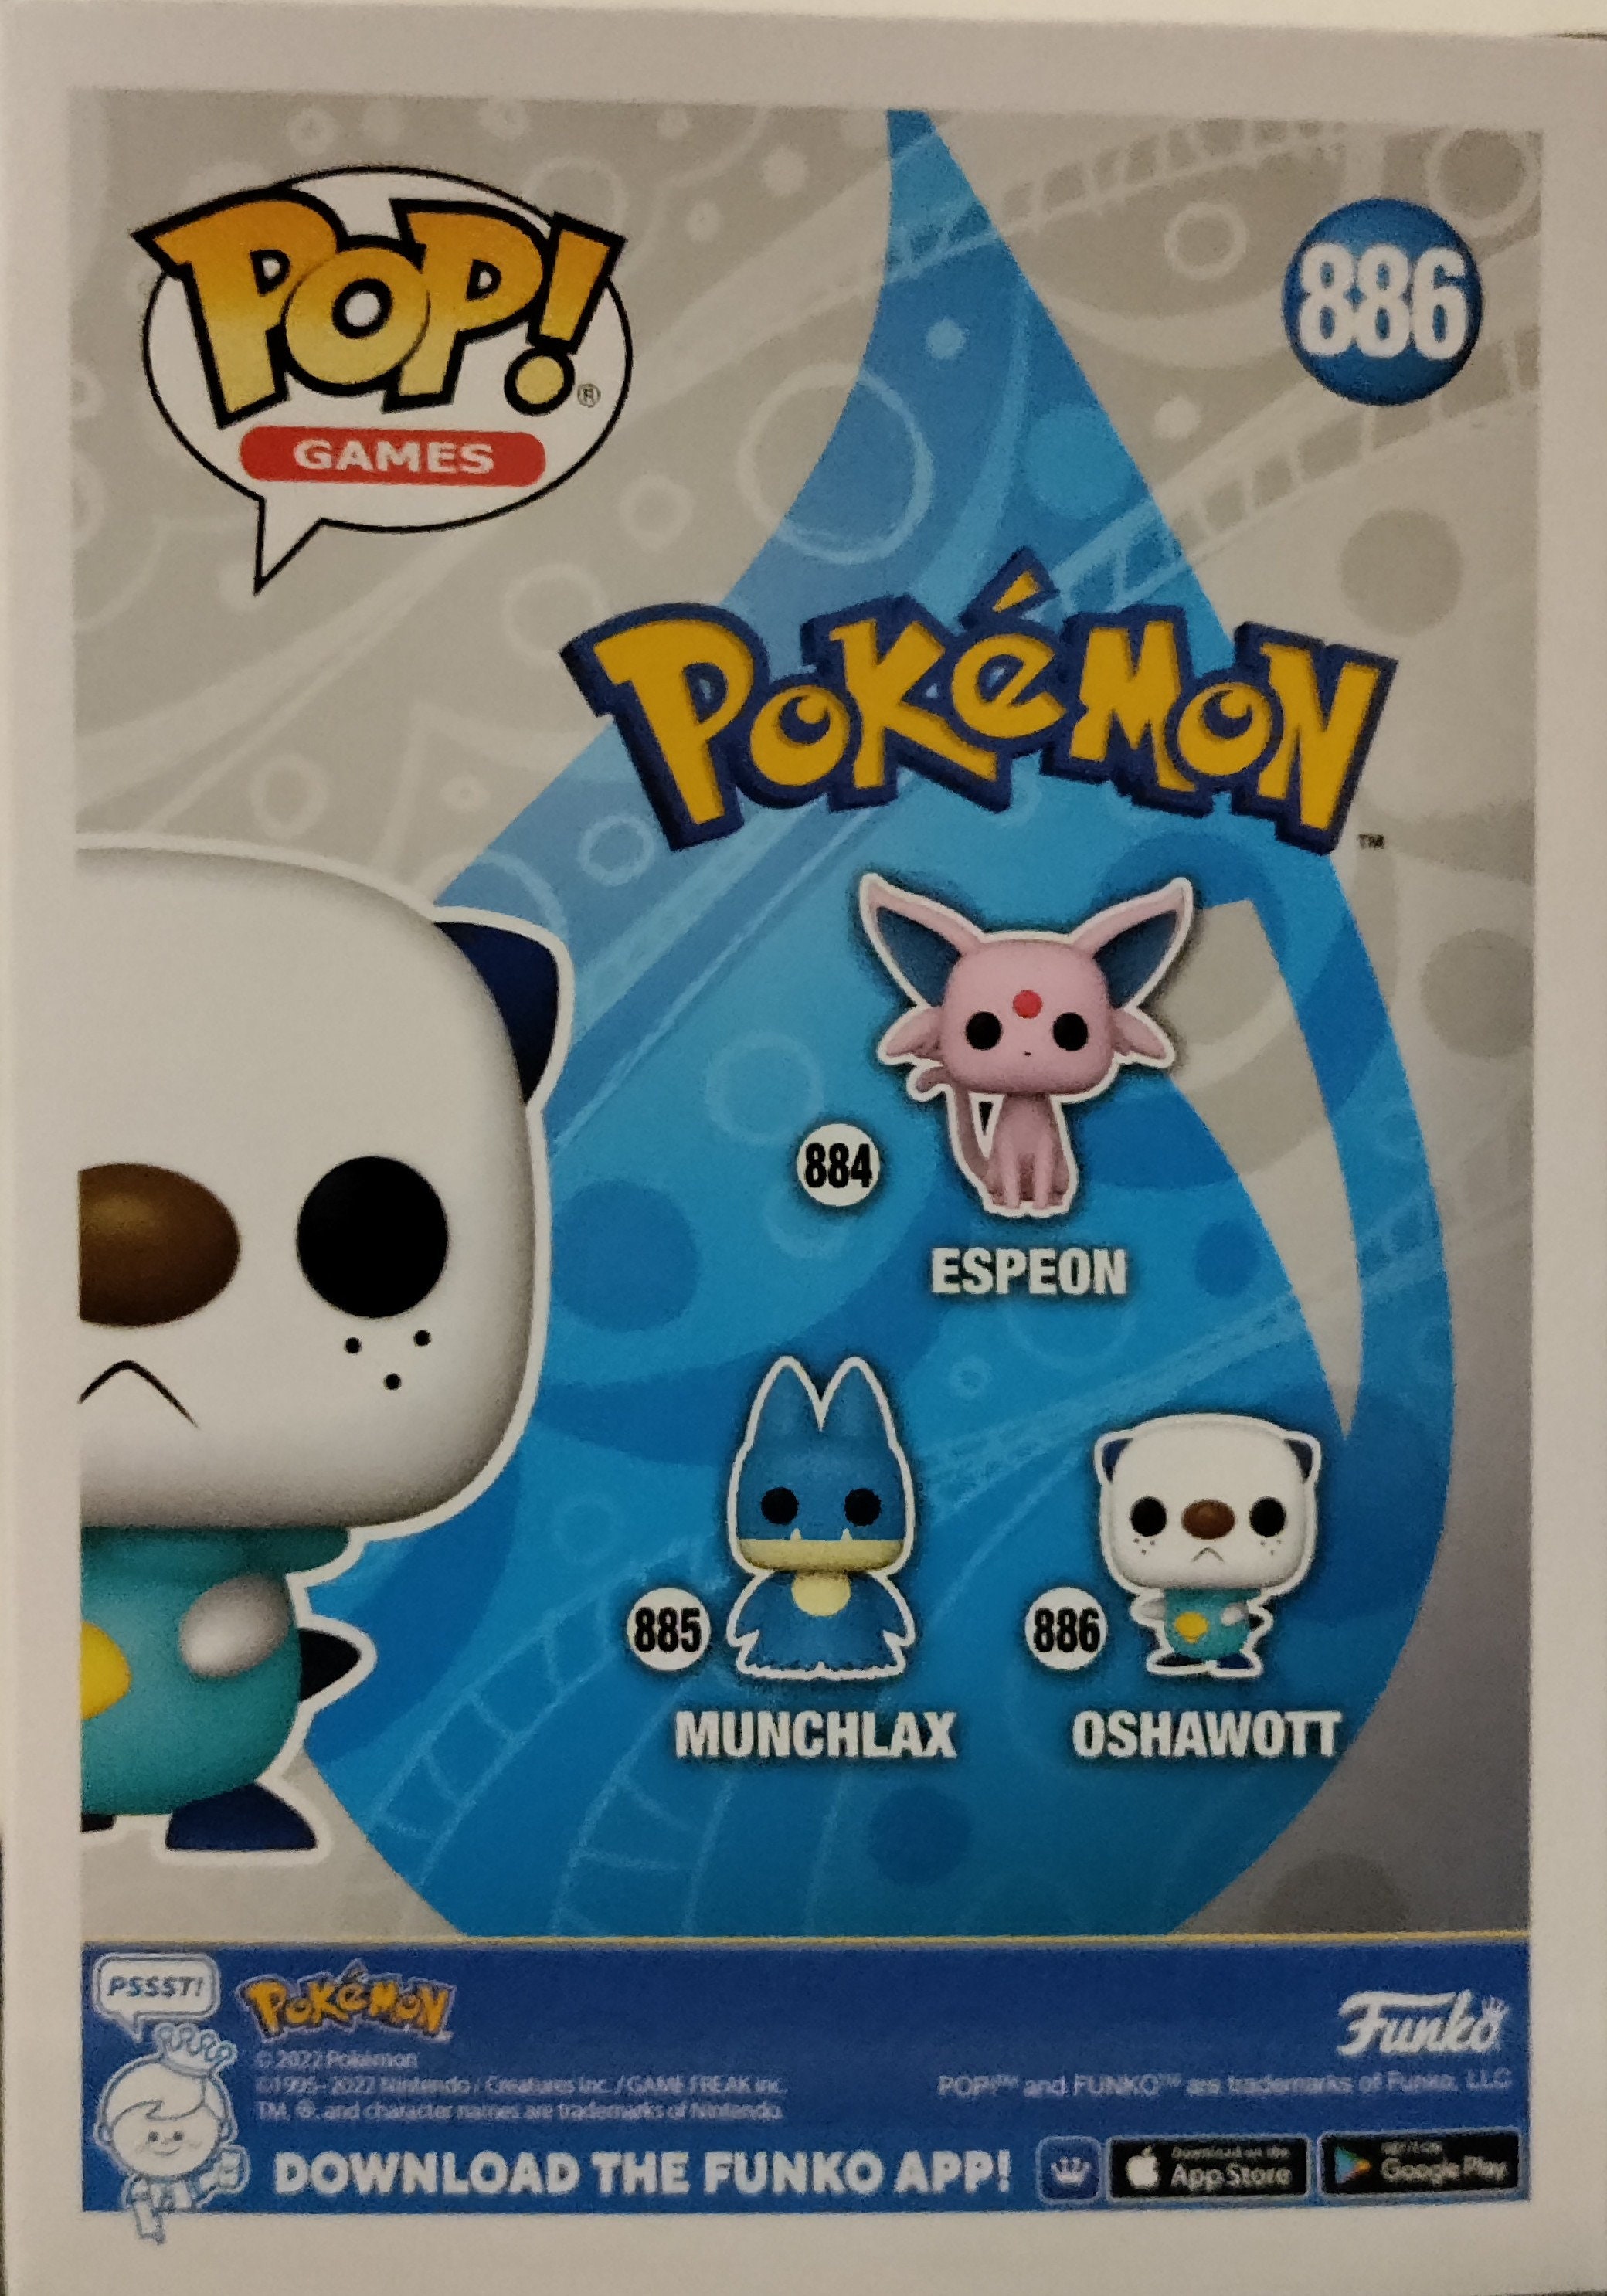 Funko Pop Oshawott 886 Pokémon – Limited Edition